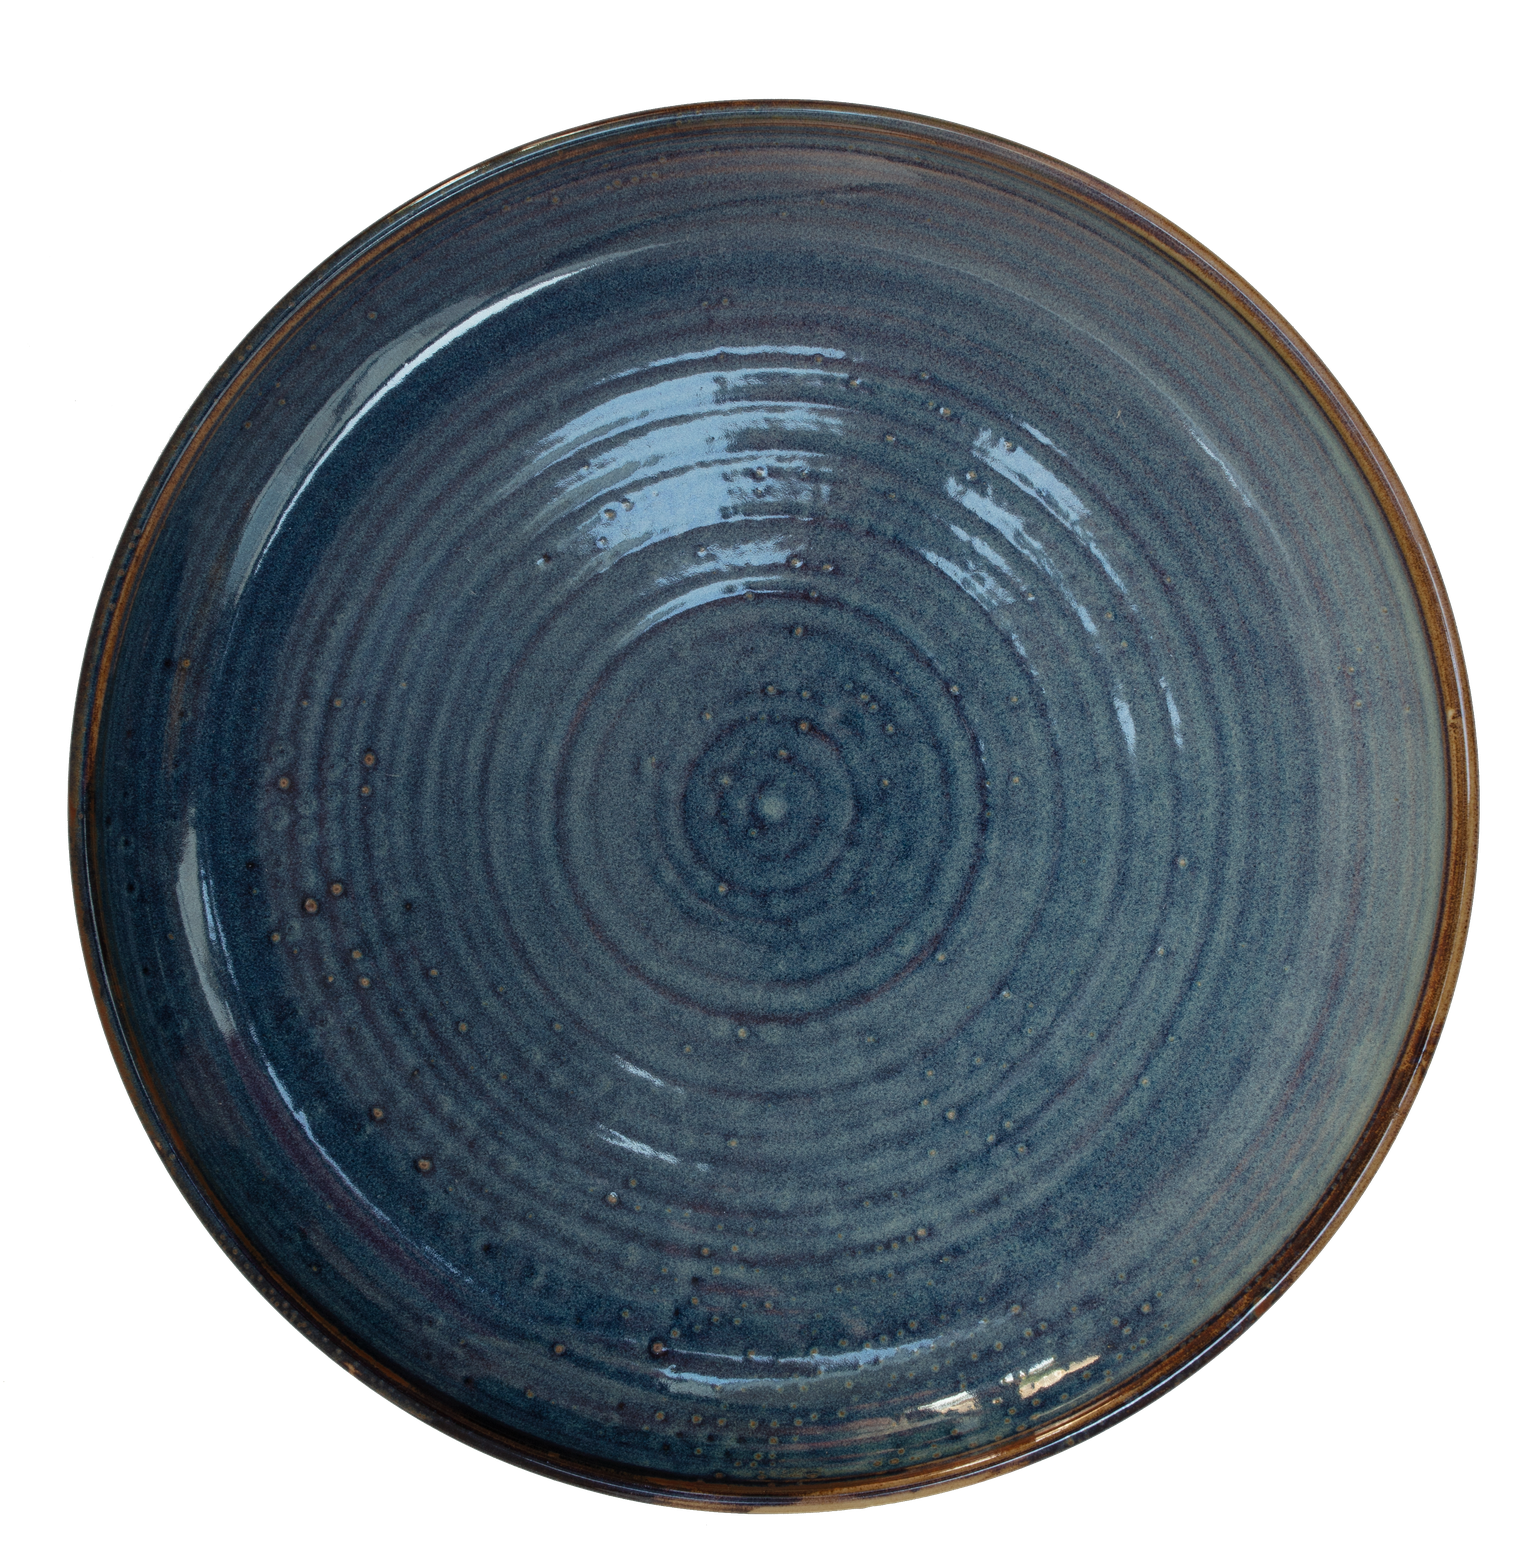 Azul Coupe Plate Ø26.5 x 2.8cm